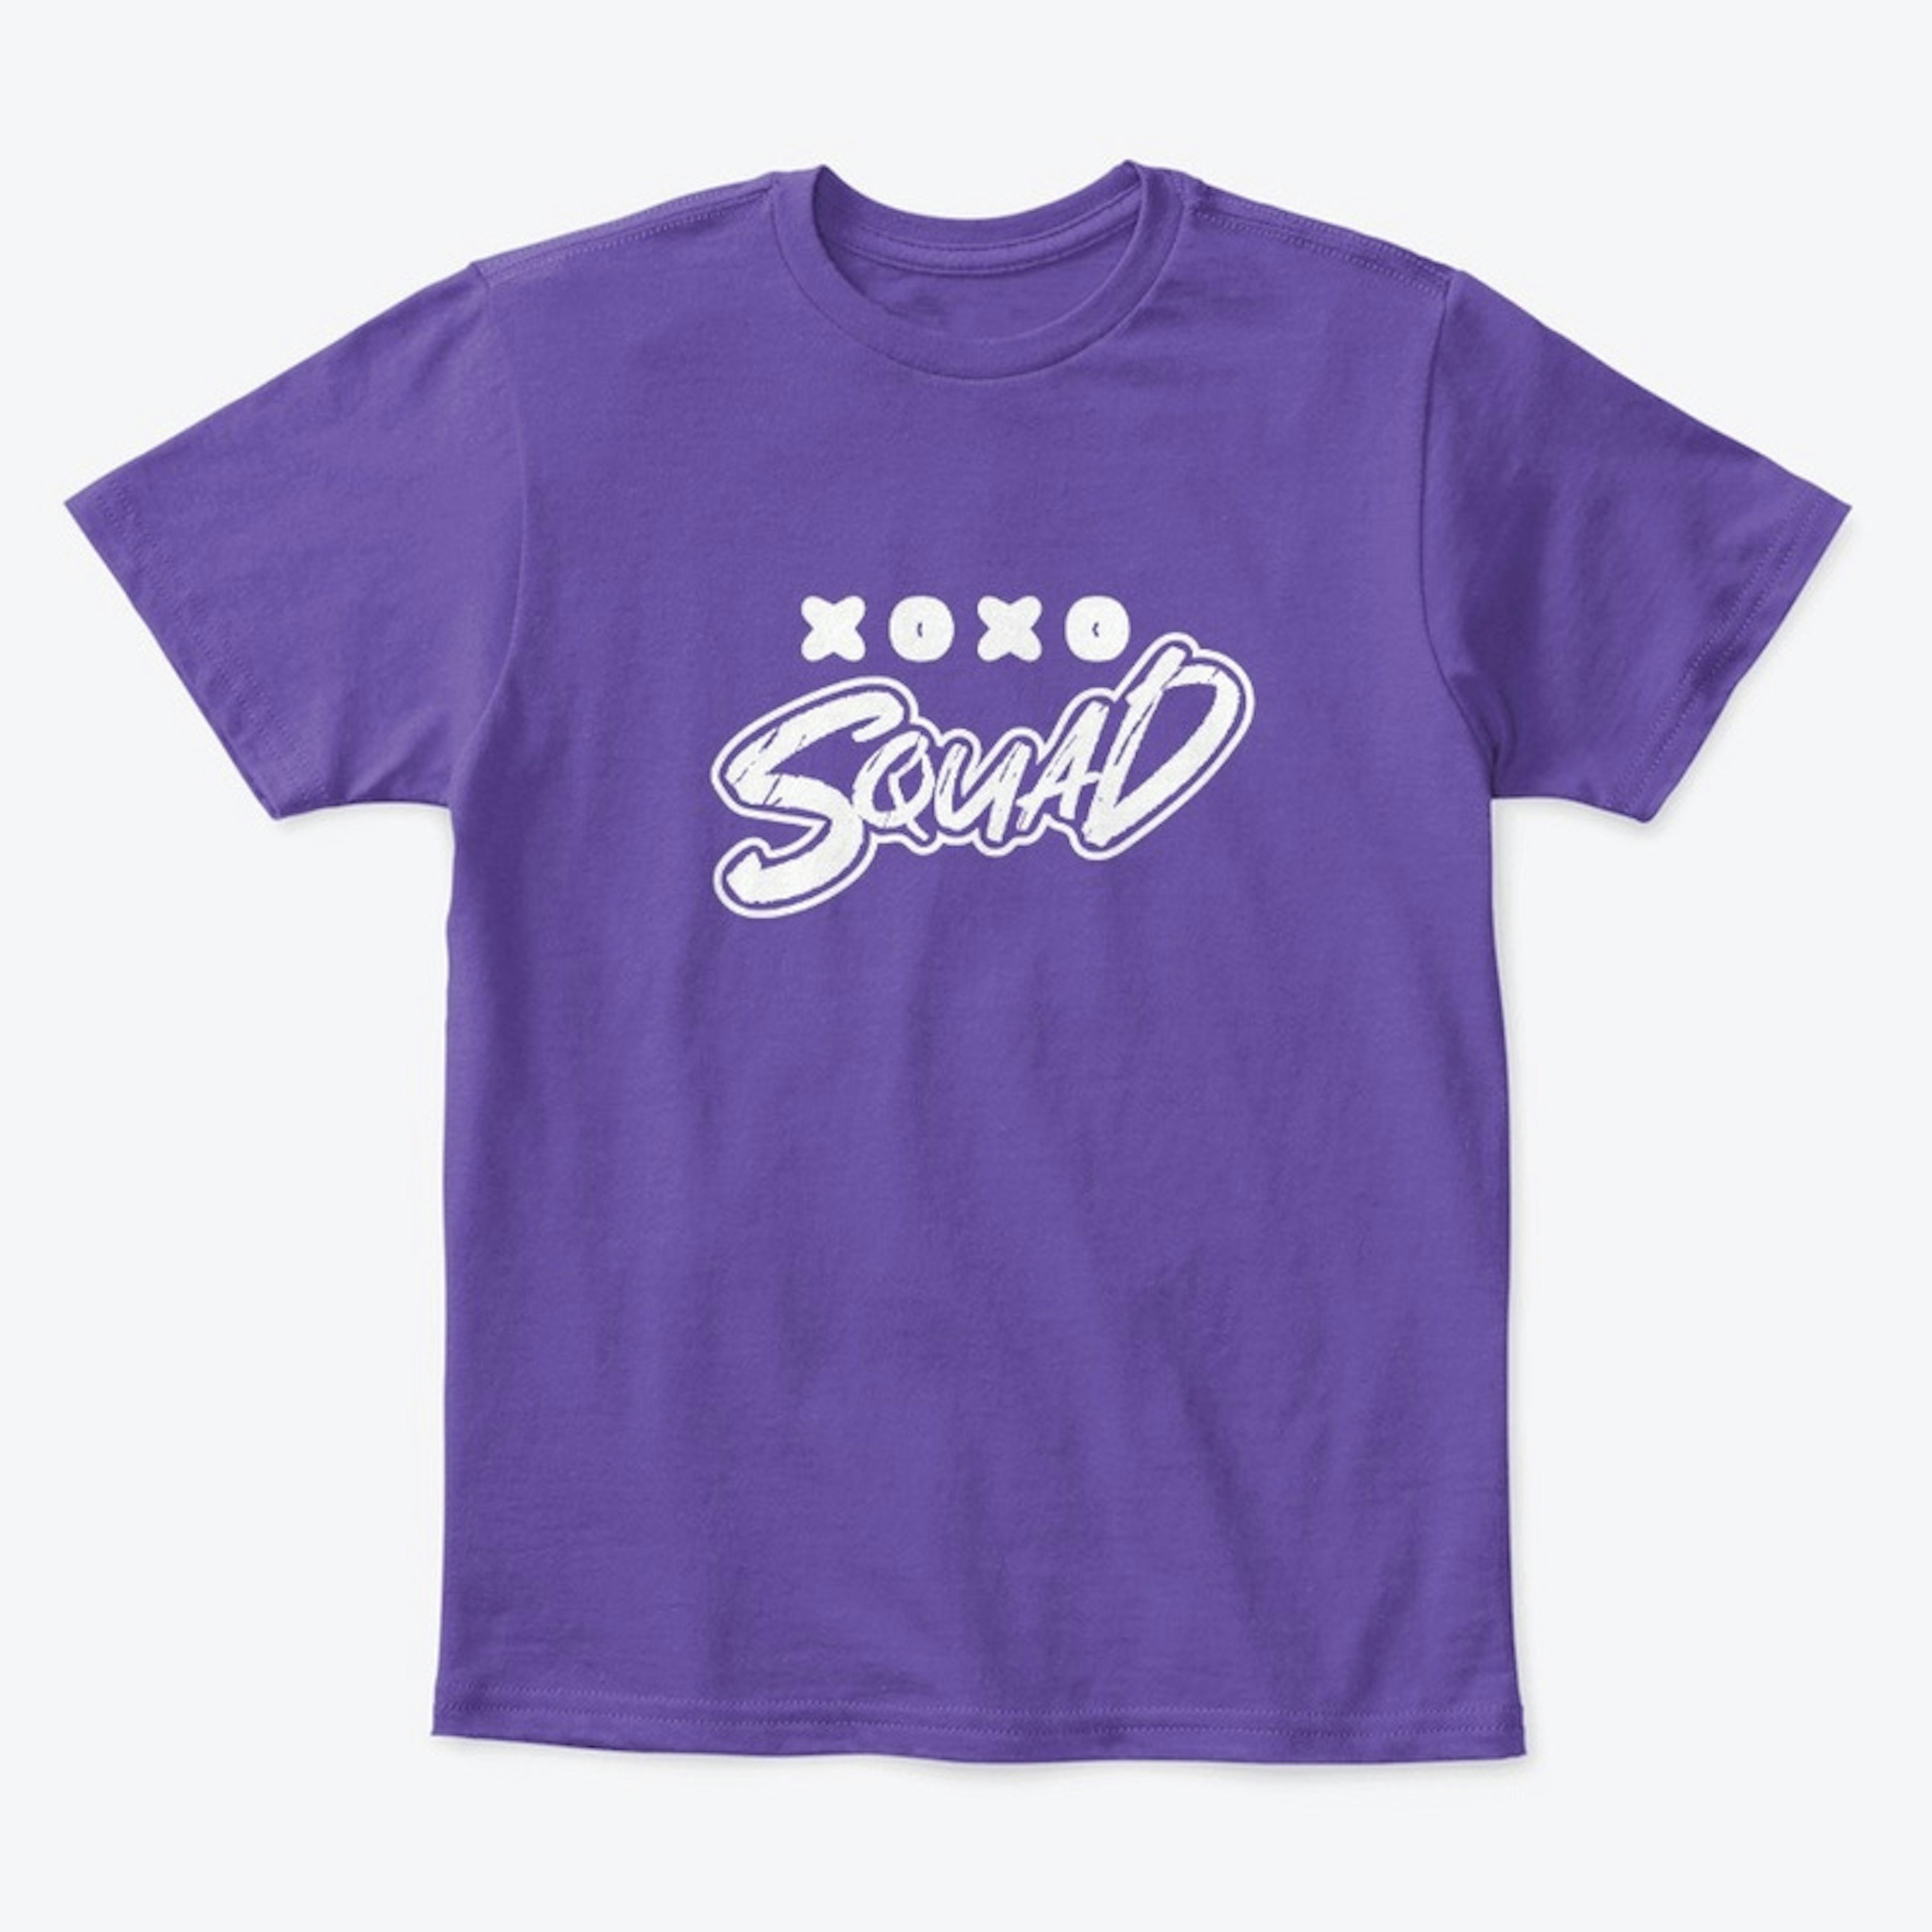 XOXO Squad T-Shirt (Kids)